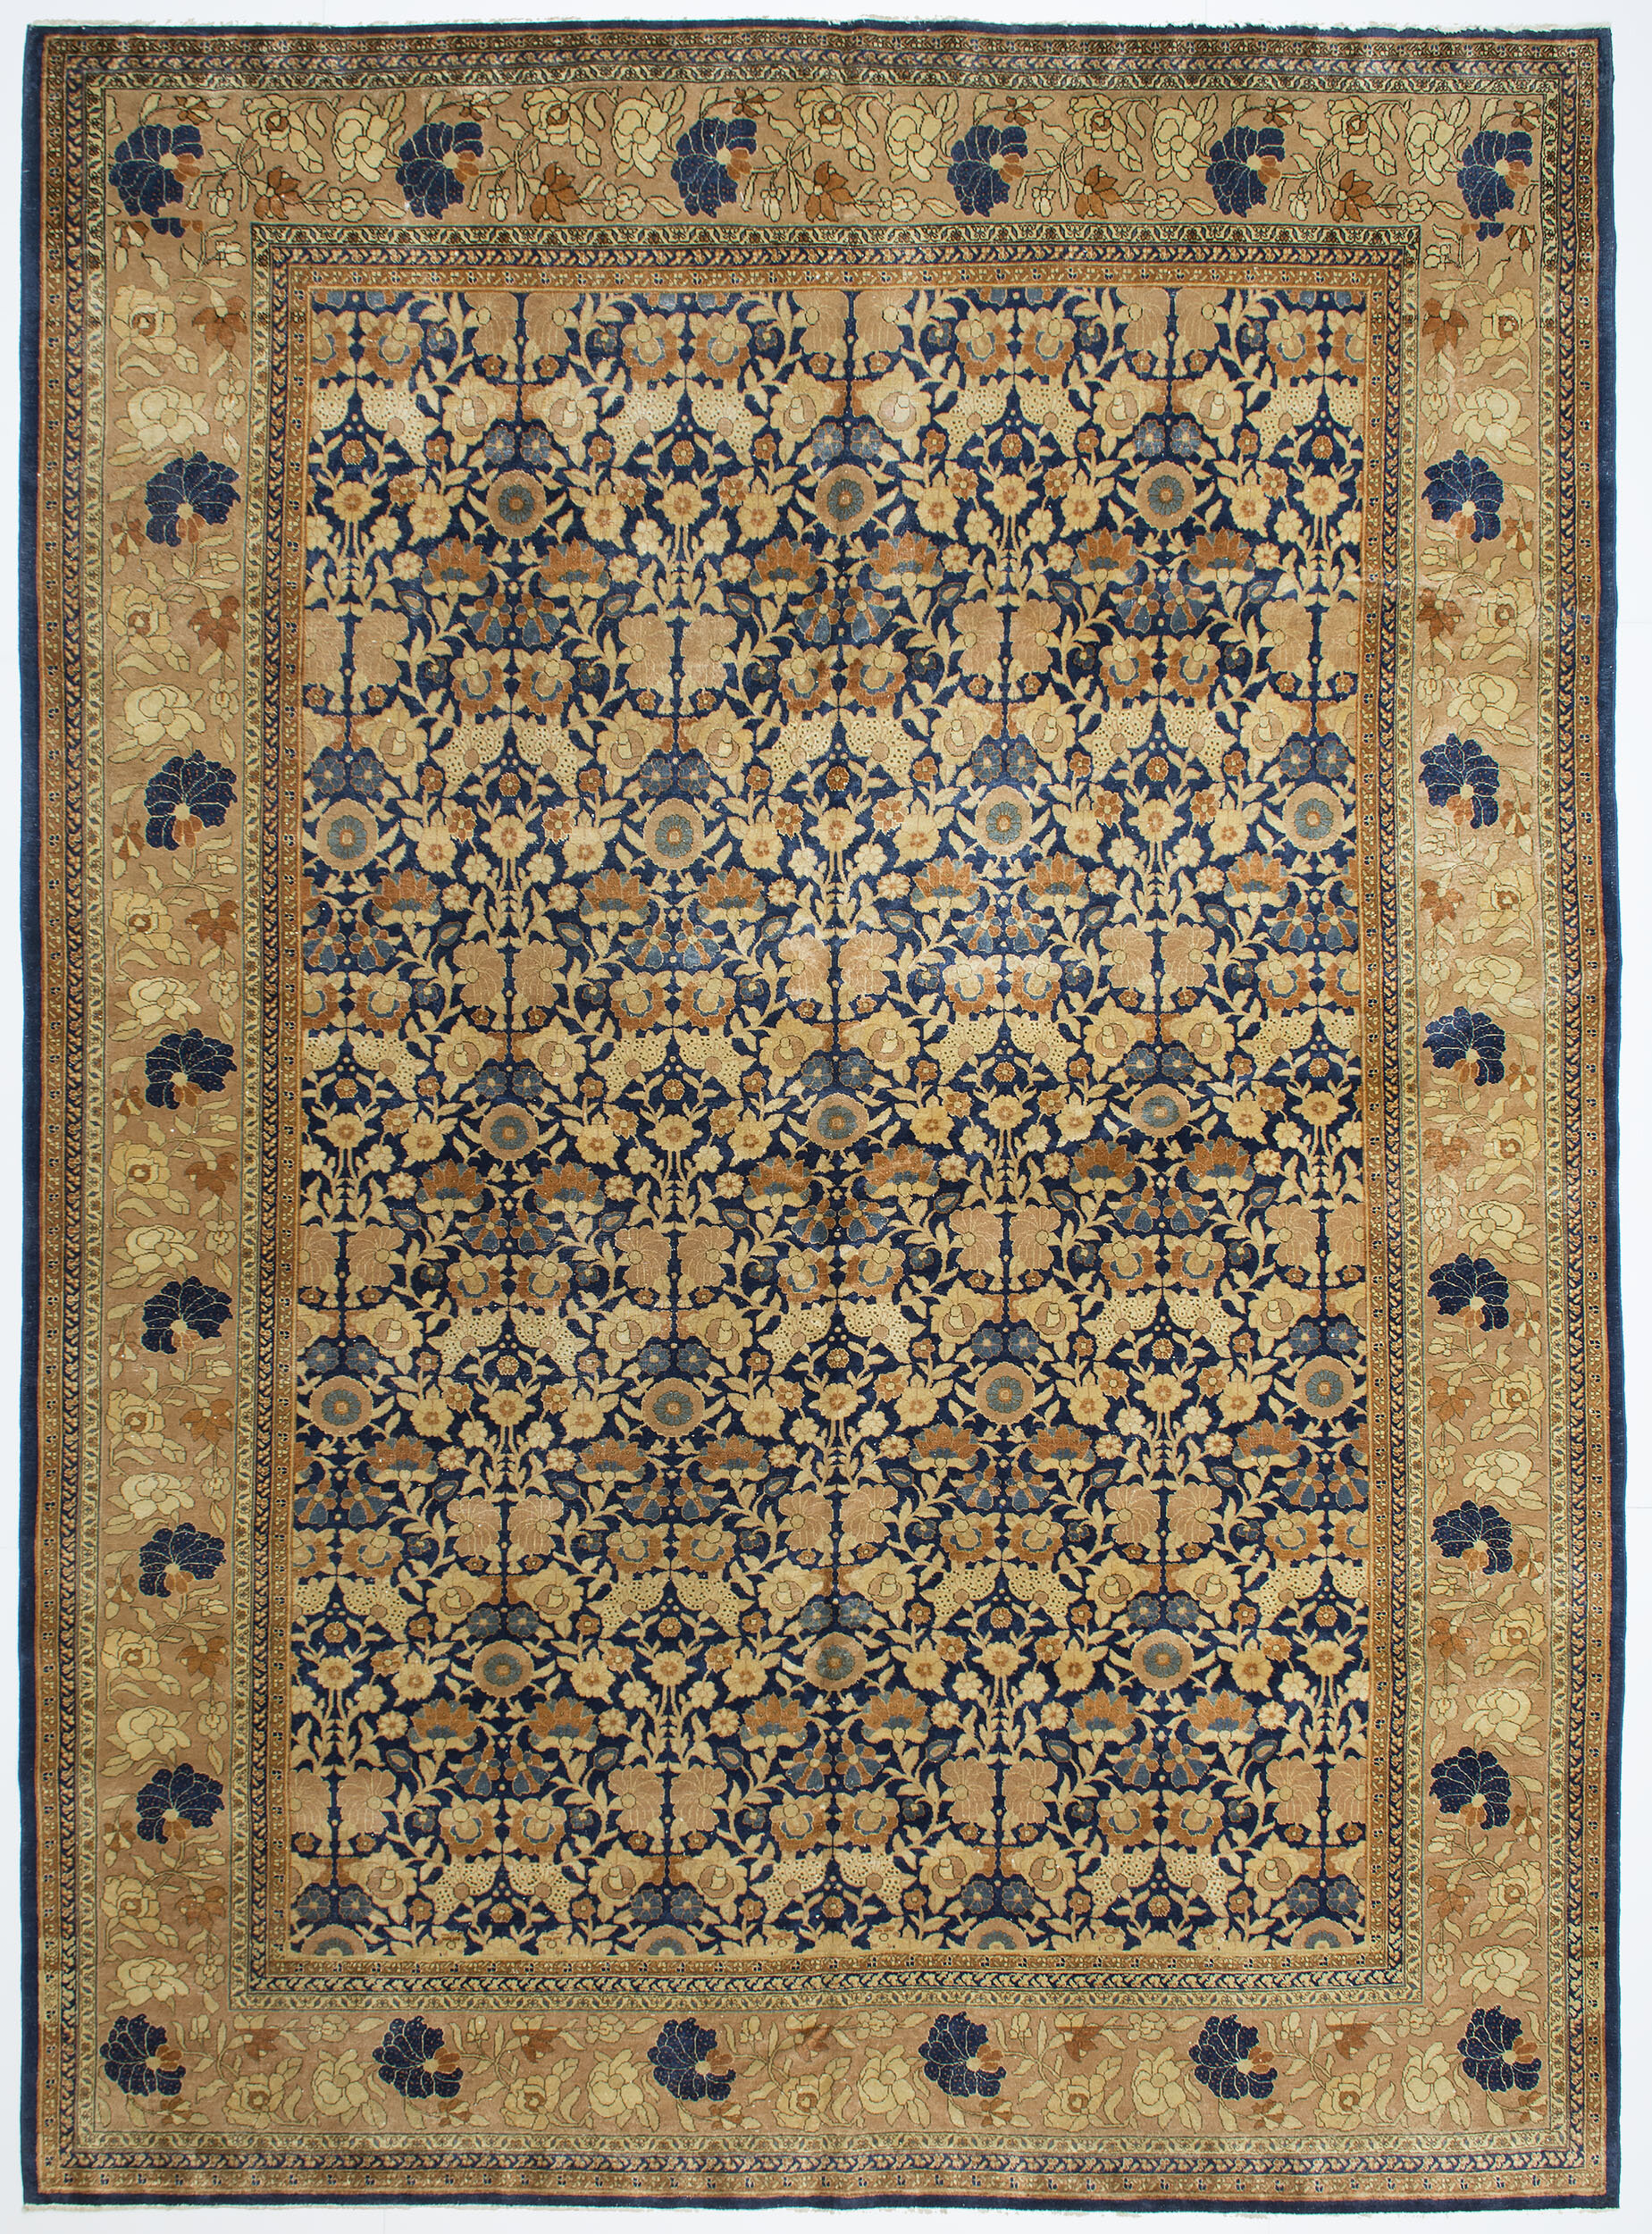 Tabriz Carpet 12' 3" x 9' 0" 